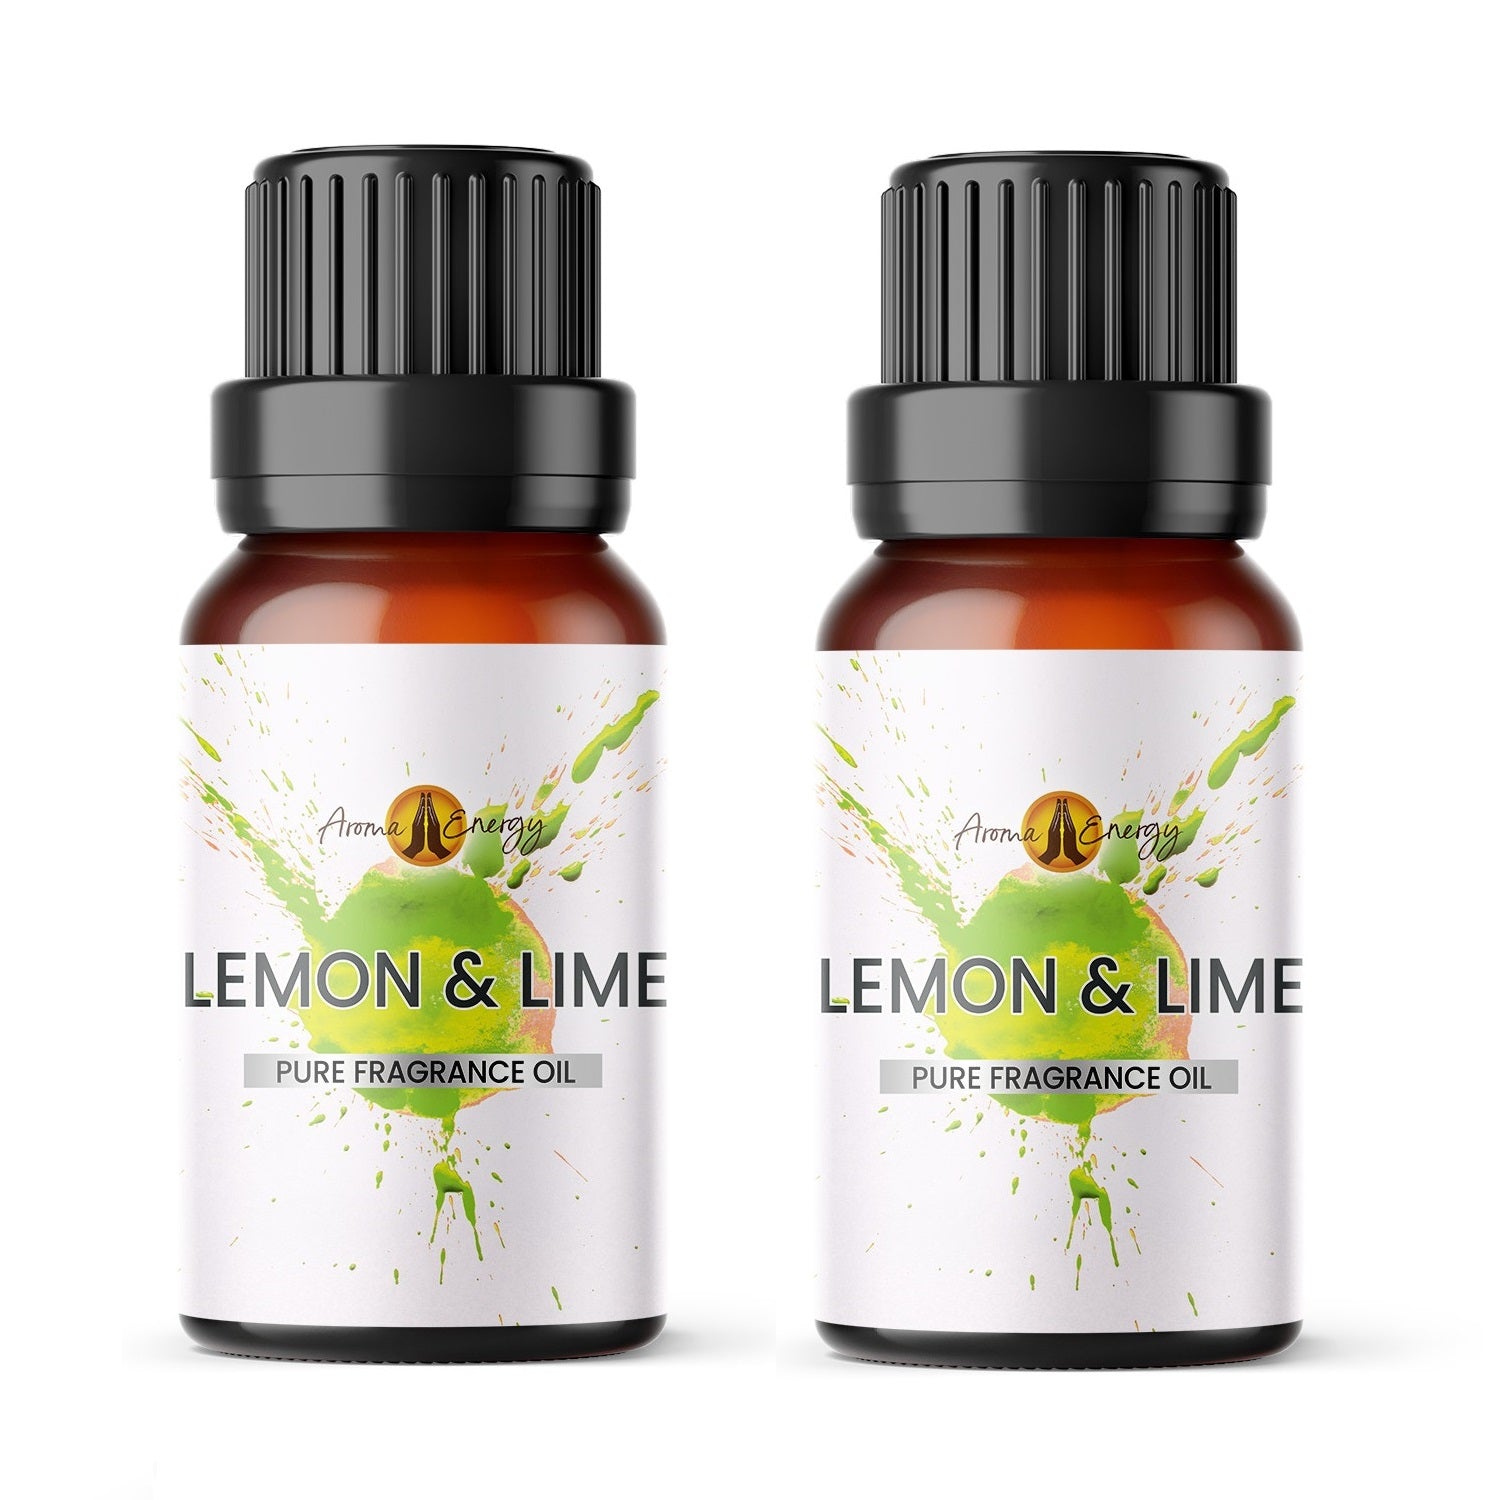 Lemon & Lime Fragrance Oil - Aroma Energy